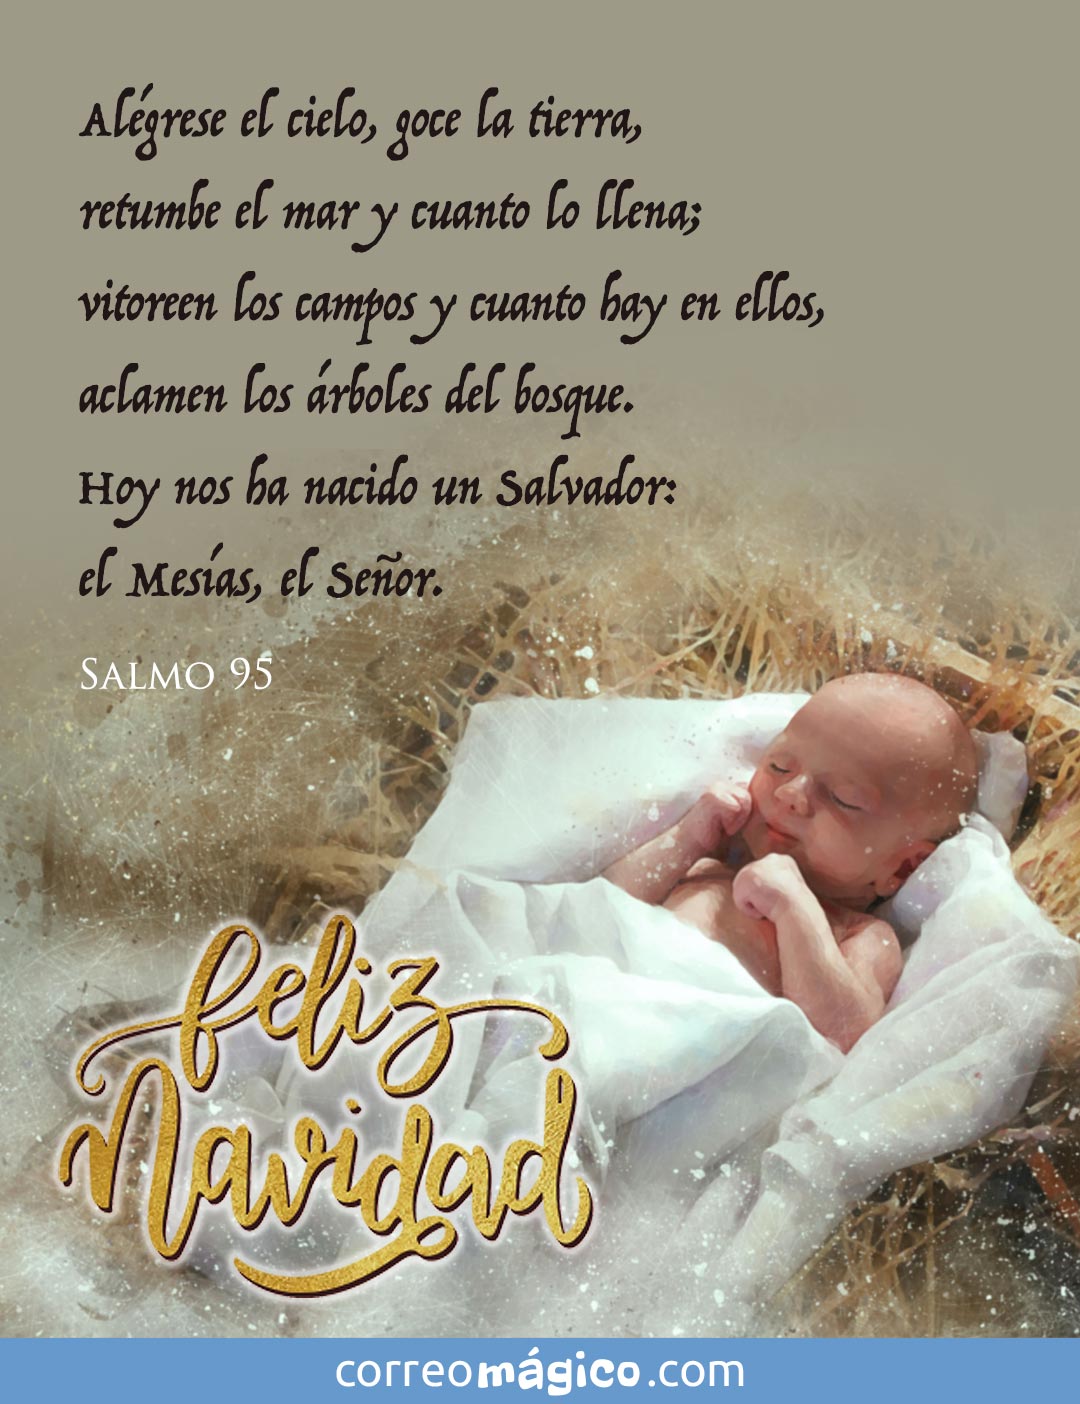 Hoy nos ha nacido un Salvador: el Mesías, el Señor. 
Salmo 95
Feliz Navidad